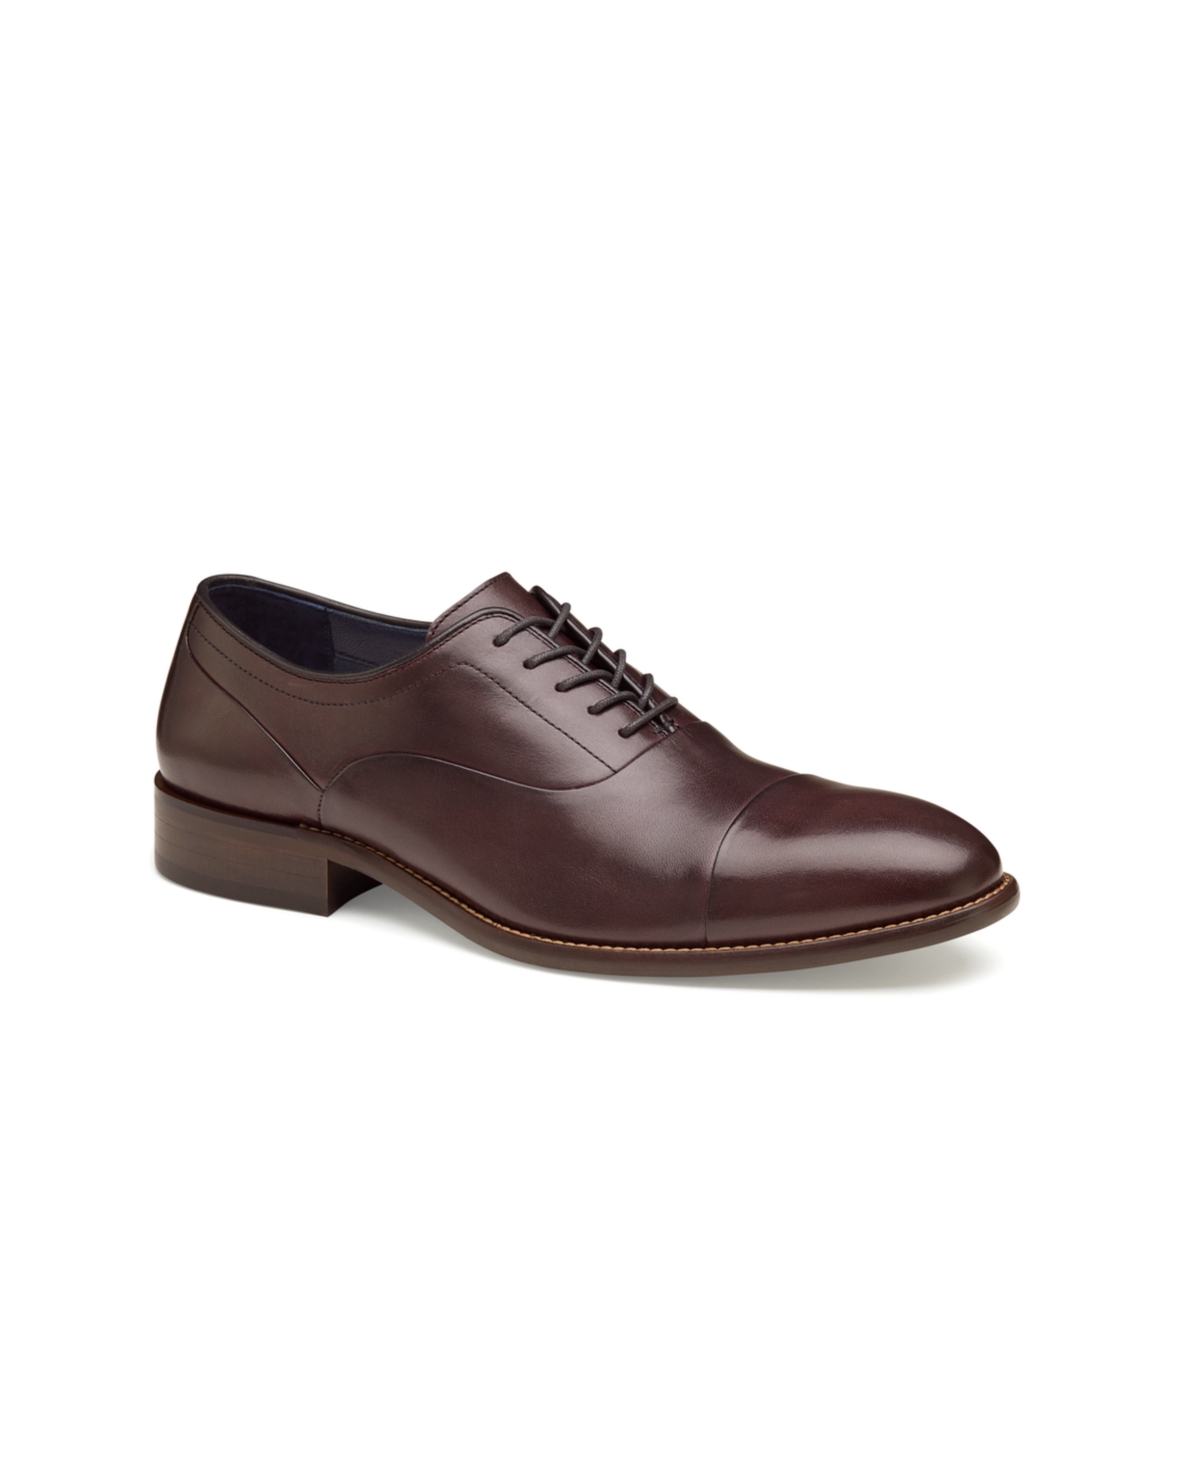 Men's Stockton Cap Toe Dress Shoes - Burgundy